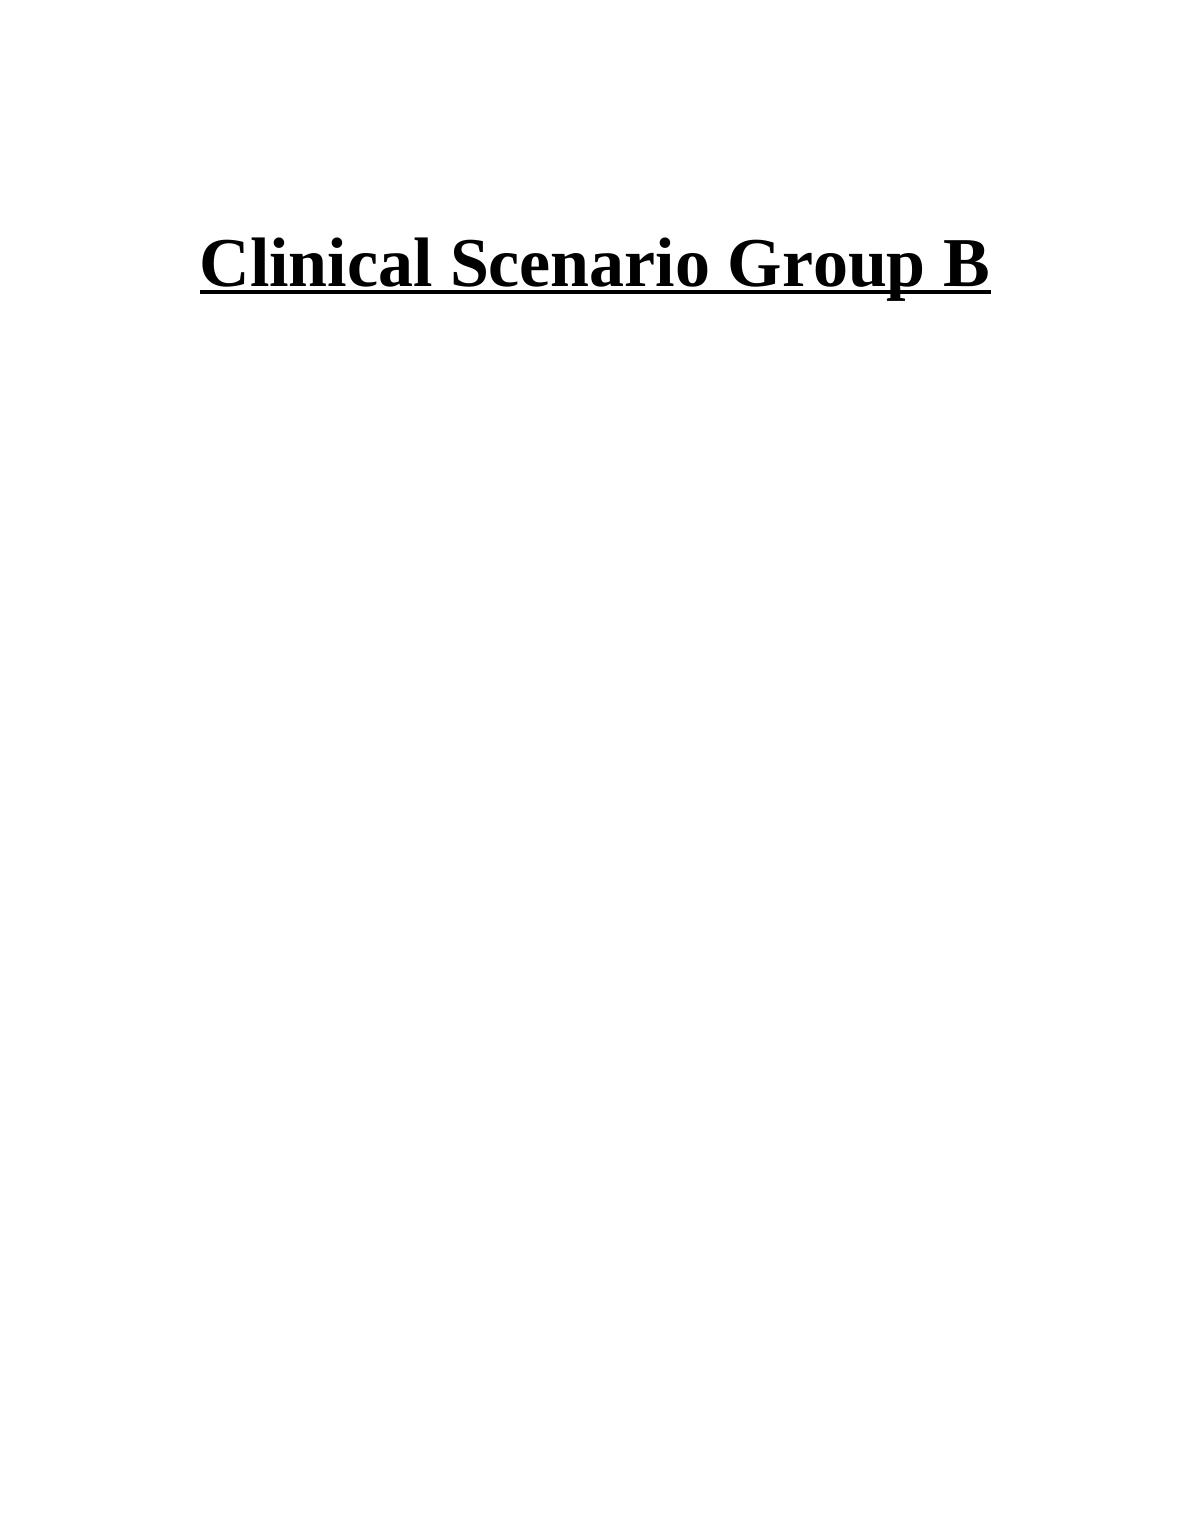 Clinical Scenario Group B_1